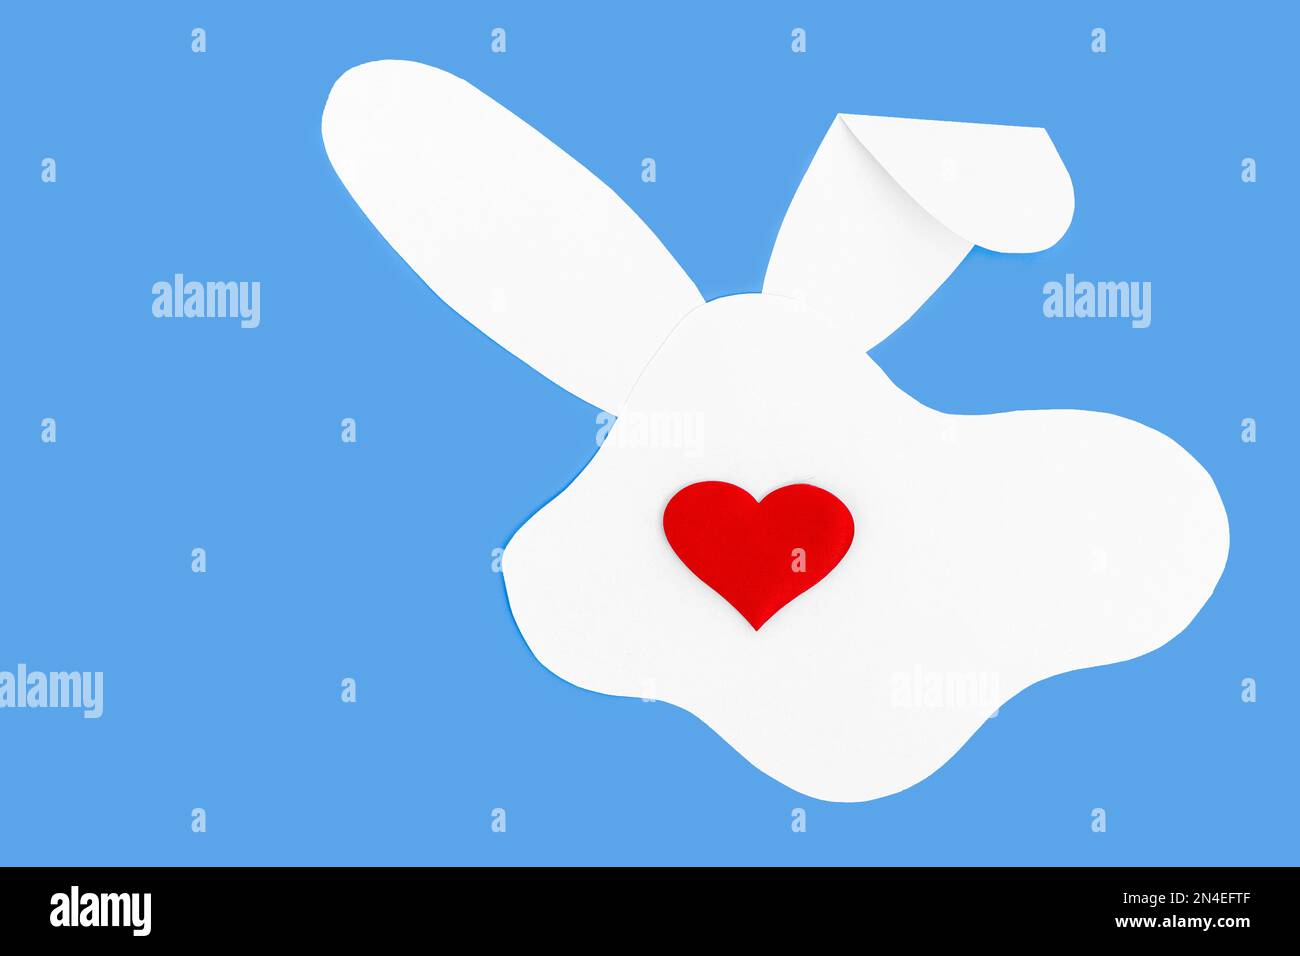 Mise en page créative composée d'une silhouette de lapin en papier blanc et d'un cœur rouge au lieu d'un nez sur fond bleu. Concept de vacances de printemps minimales. Banque D'Images